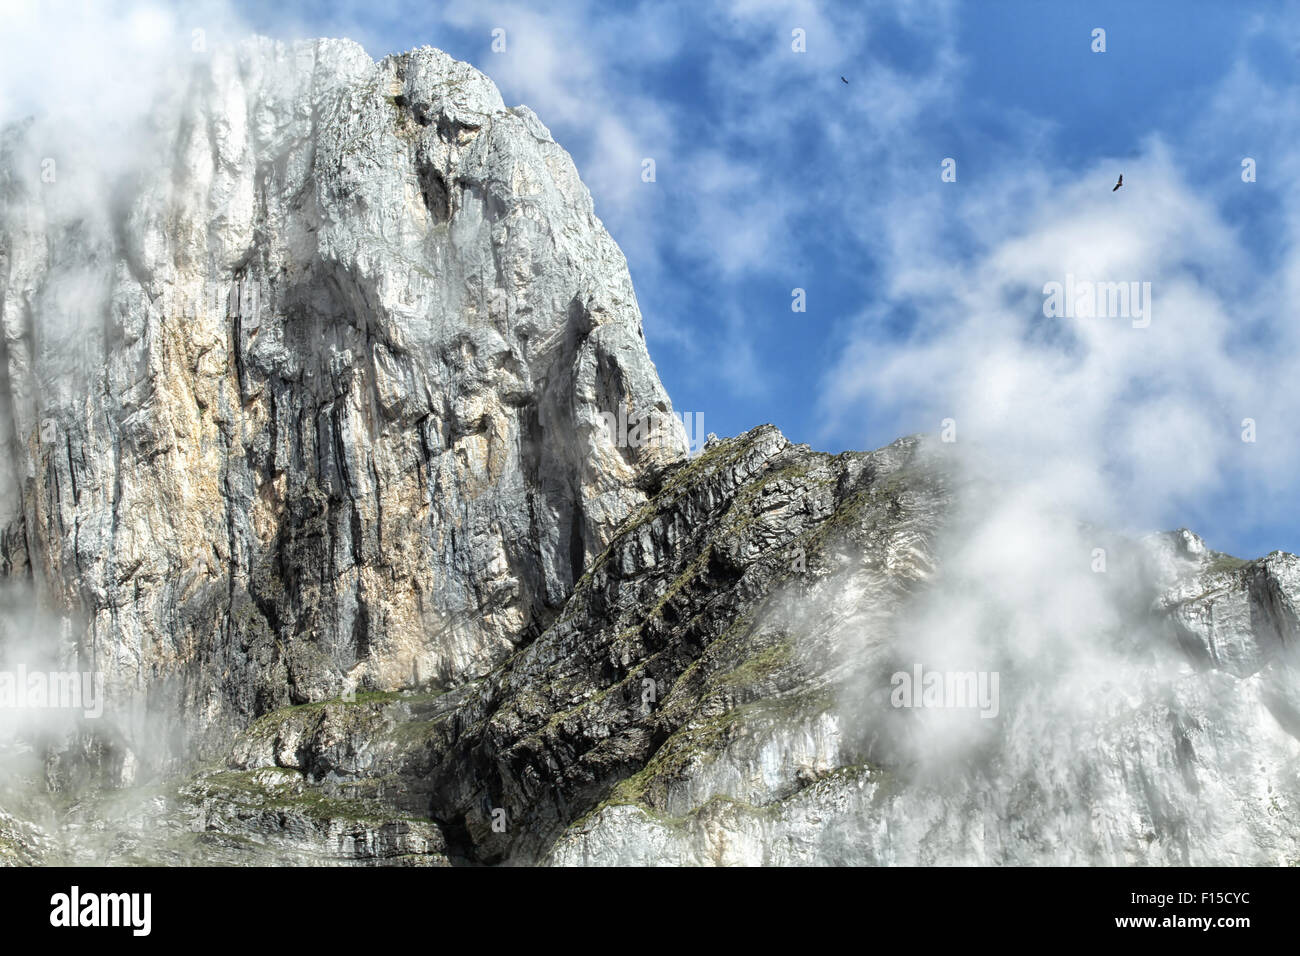 Les sommets des montagnes alpines de Picos de Europa, les monts Cantabriques, en Espagne. Les cercles de vautours fauves à proximité. Banque D'Images